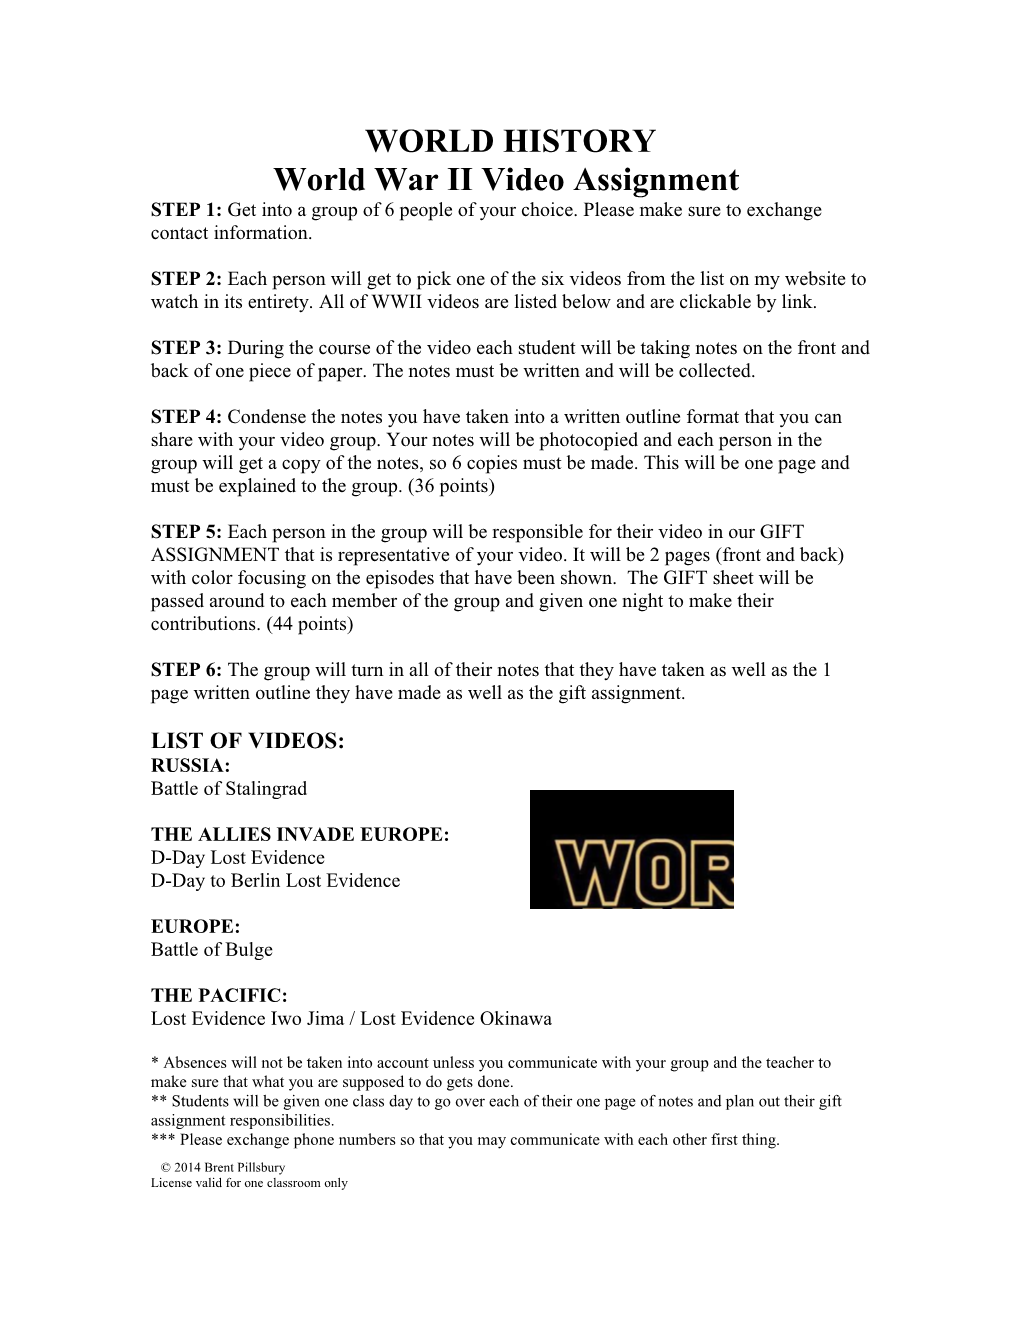 World War II Video Assignment